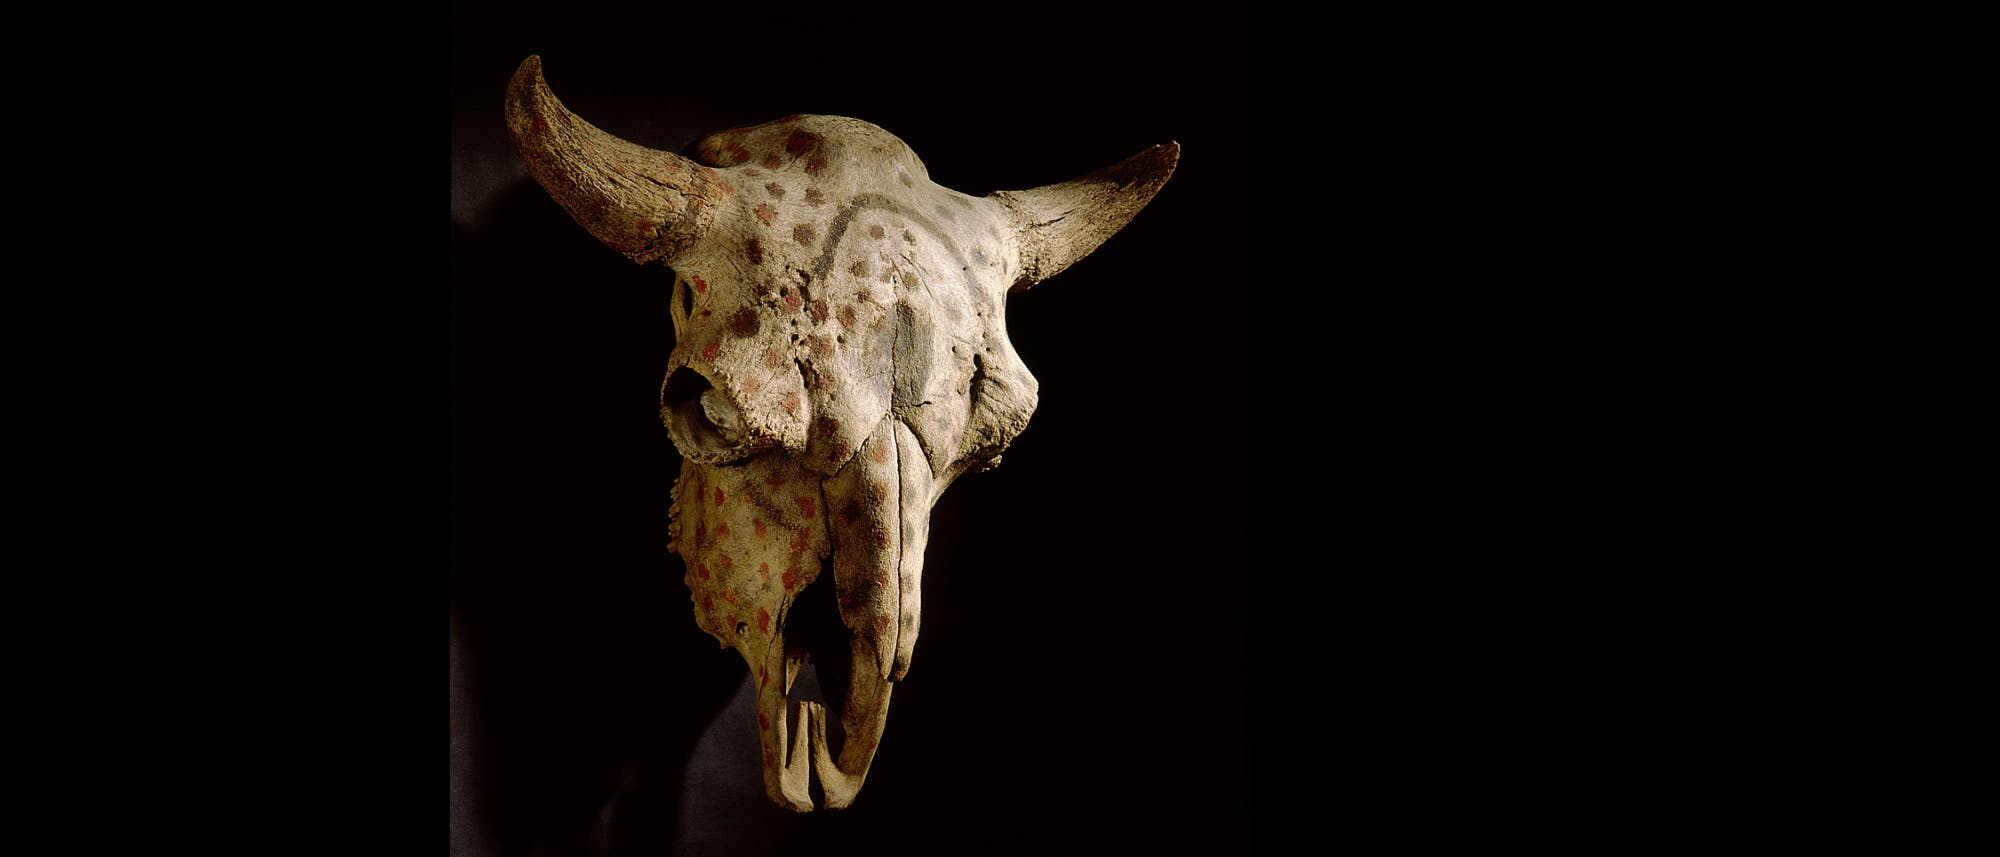 Der bemalte Büffelschädel, der heute in der ethnologischen Sammlung in Berlin aufbewahrt wird, gehörte womöglich einst der indigenen Gruppe der Blackfoot in Kanada.